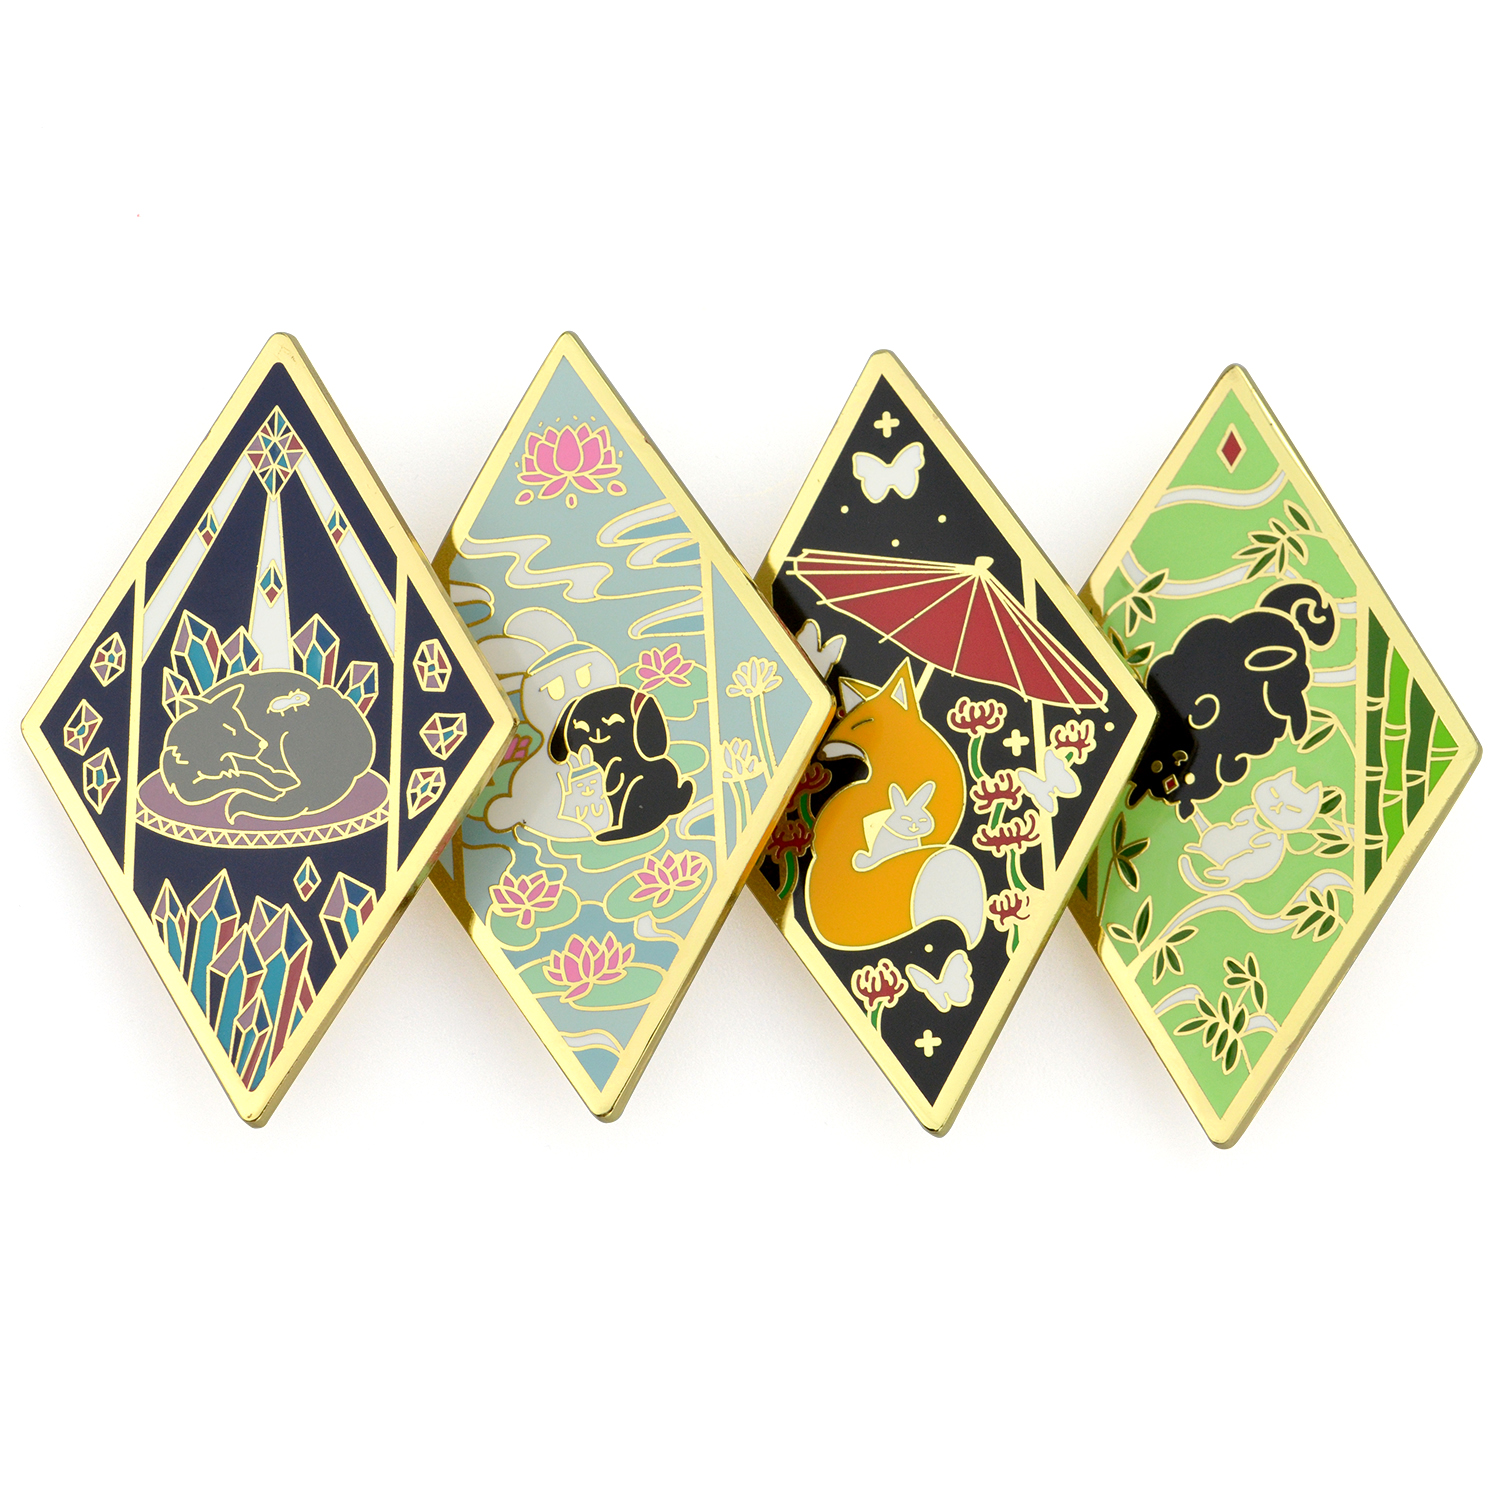 Souvenir Custom Logo Metal Hard Enamel Badge Decorative Lapel Pins for Clothes